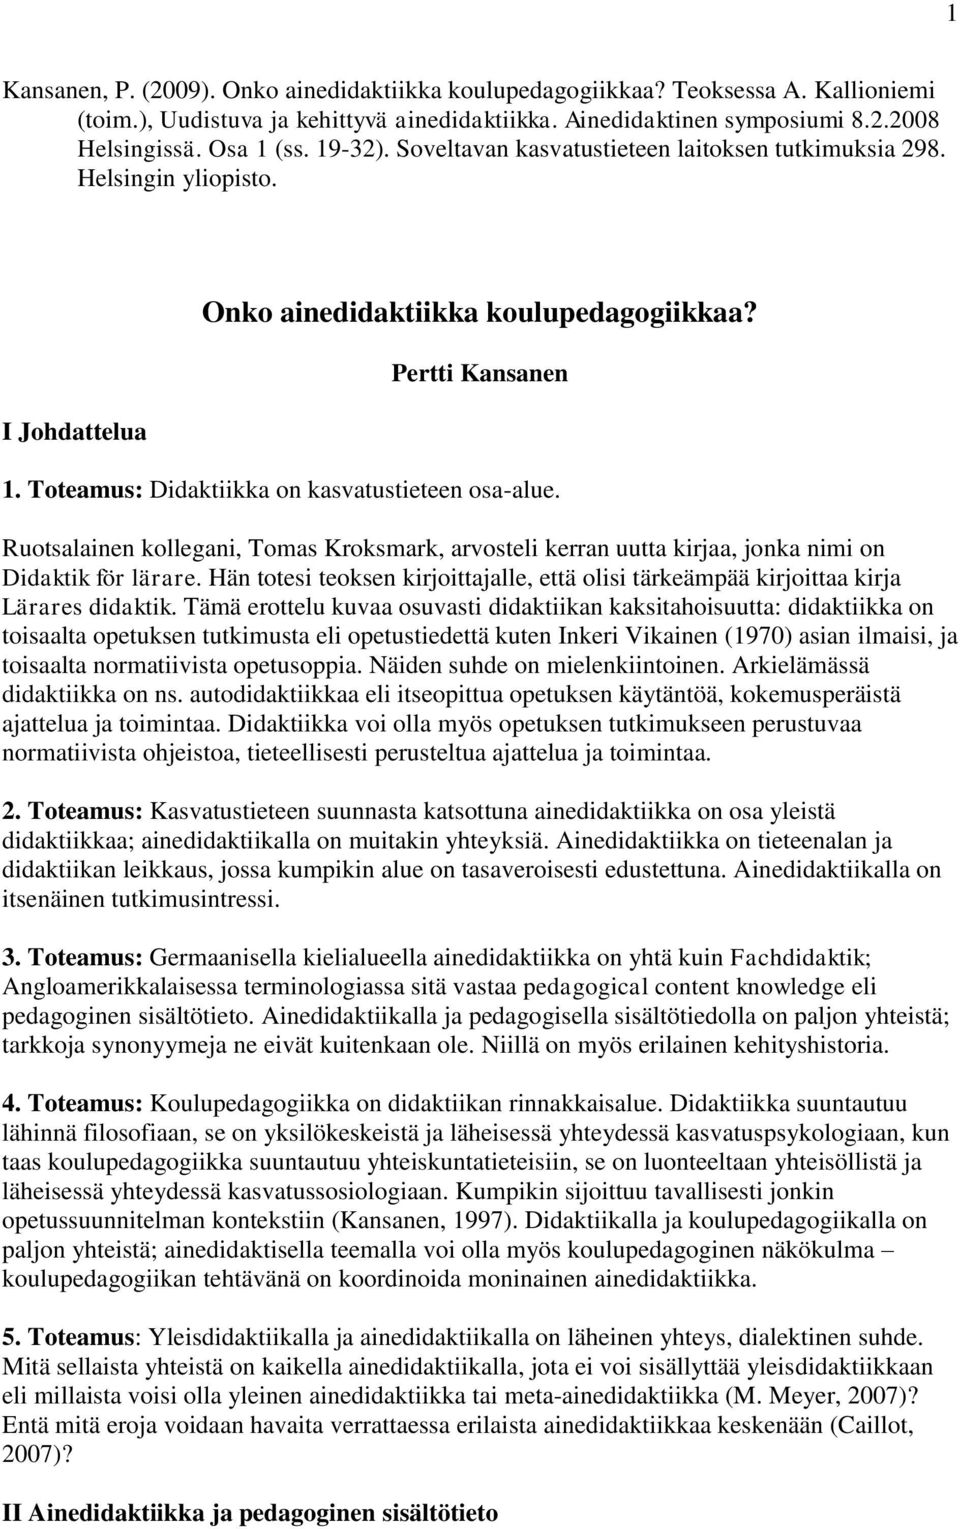 Toteamus: Didaktiikka on kasvatustieteen osa-alue. Ruotsalainen kollegani, Tomas Kroksmark, arvosteli kerran uutta kirjaa, jonka nimi on Didaktik för lärare.